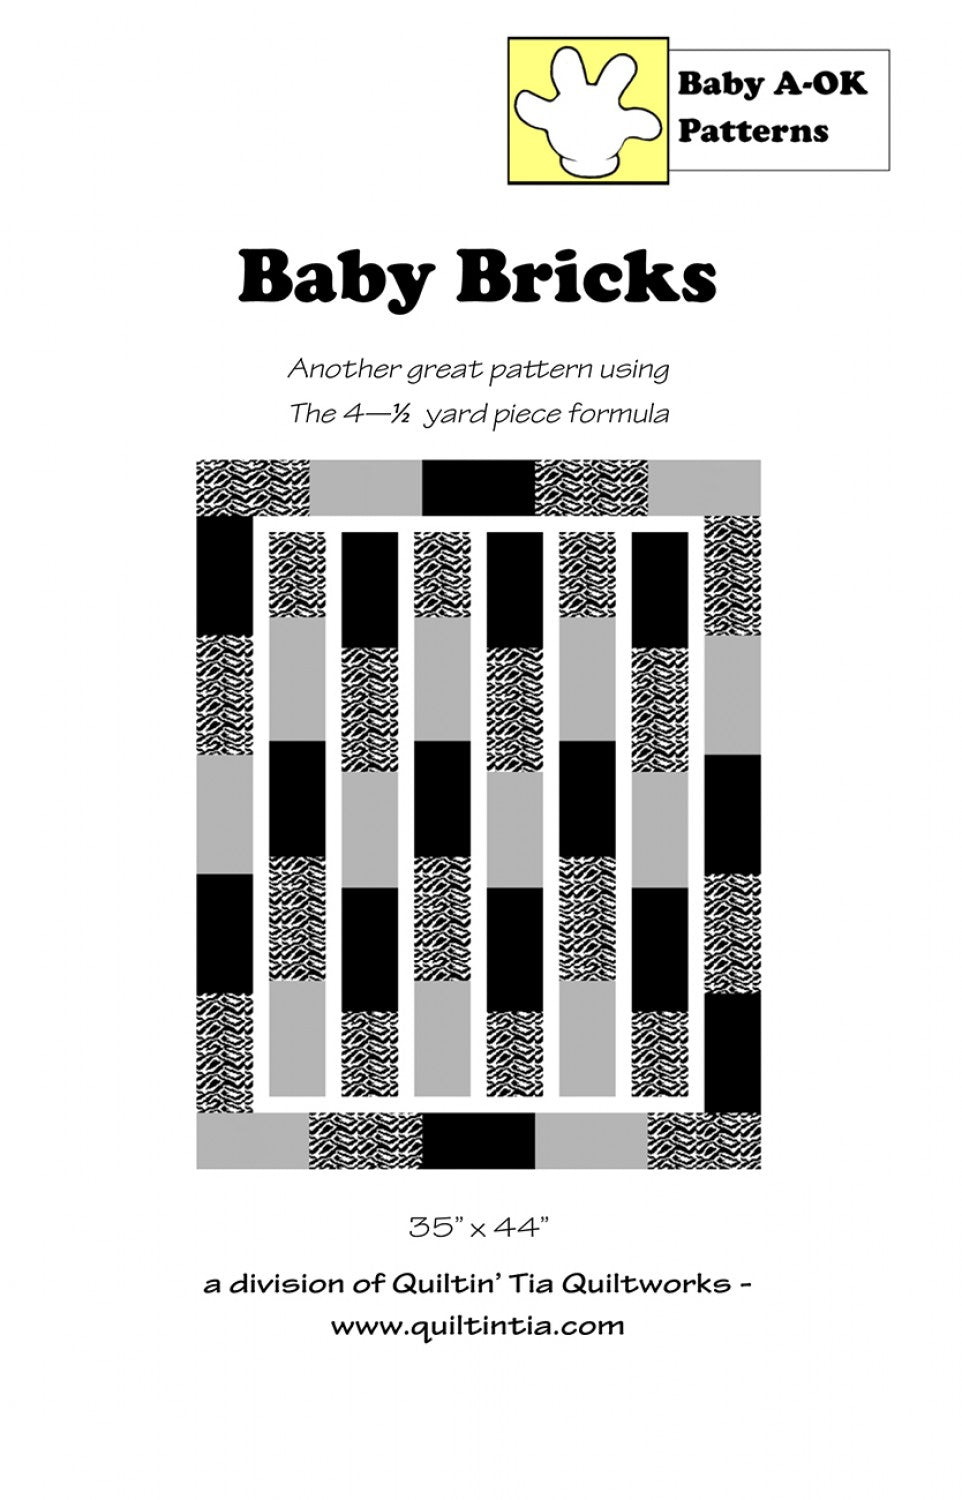 Quiltin' Tia Quiltworks | Baby Bricks Quilt Pattern